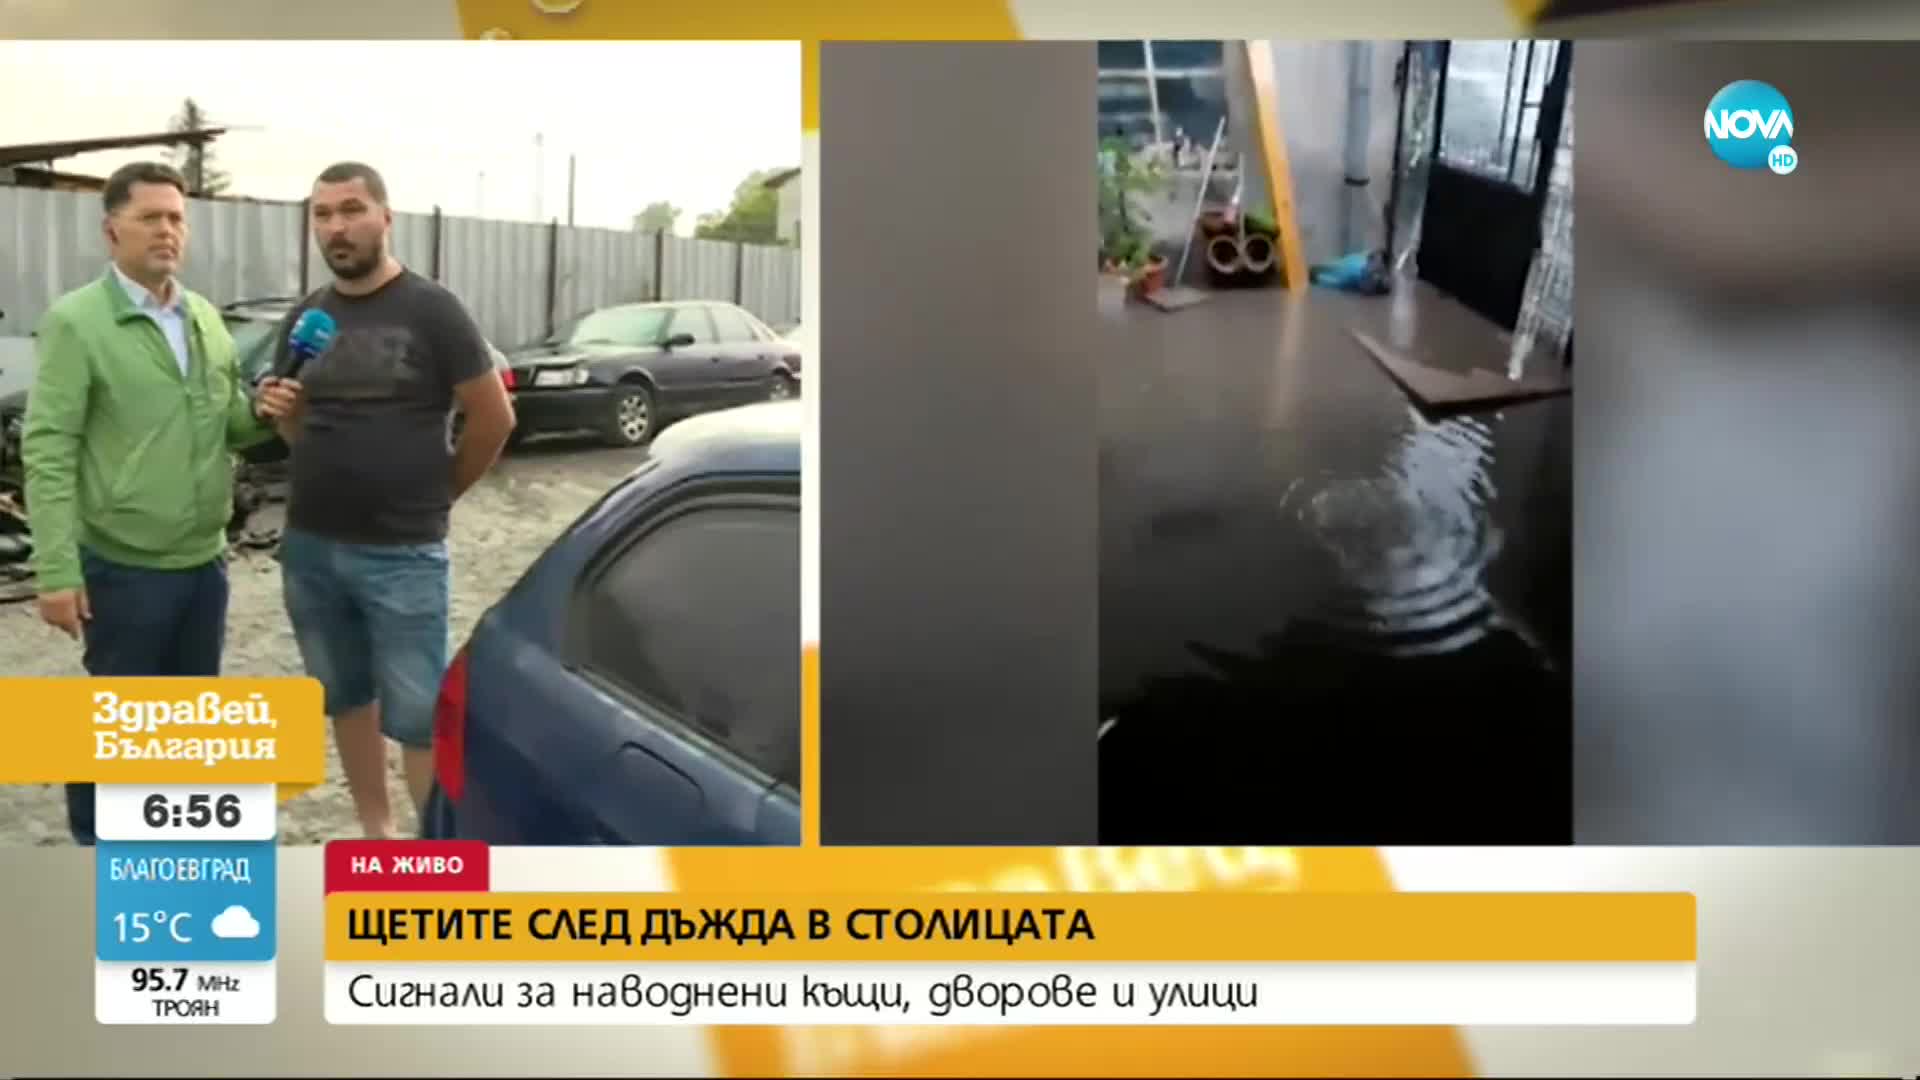 Сигнали за наводнени къщи, дворове и улици в София